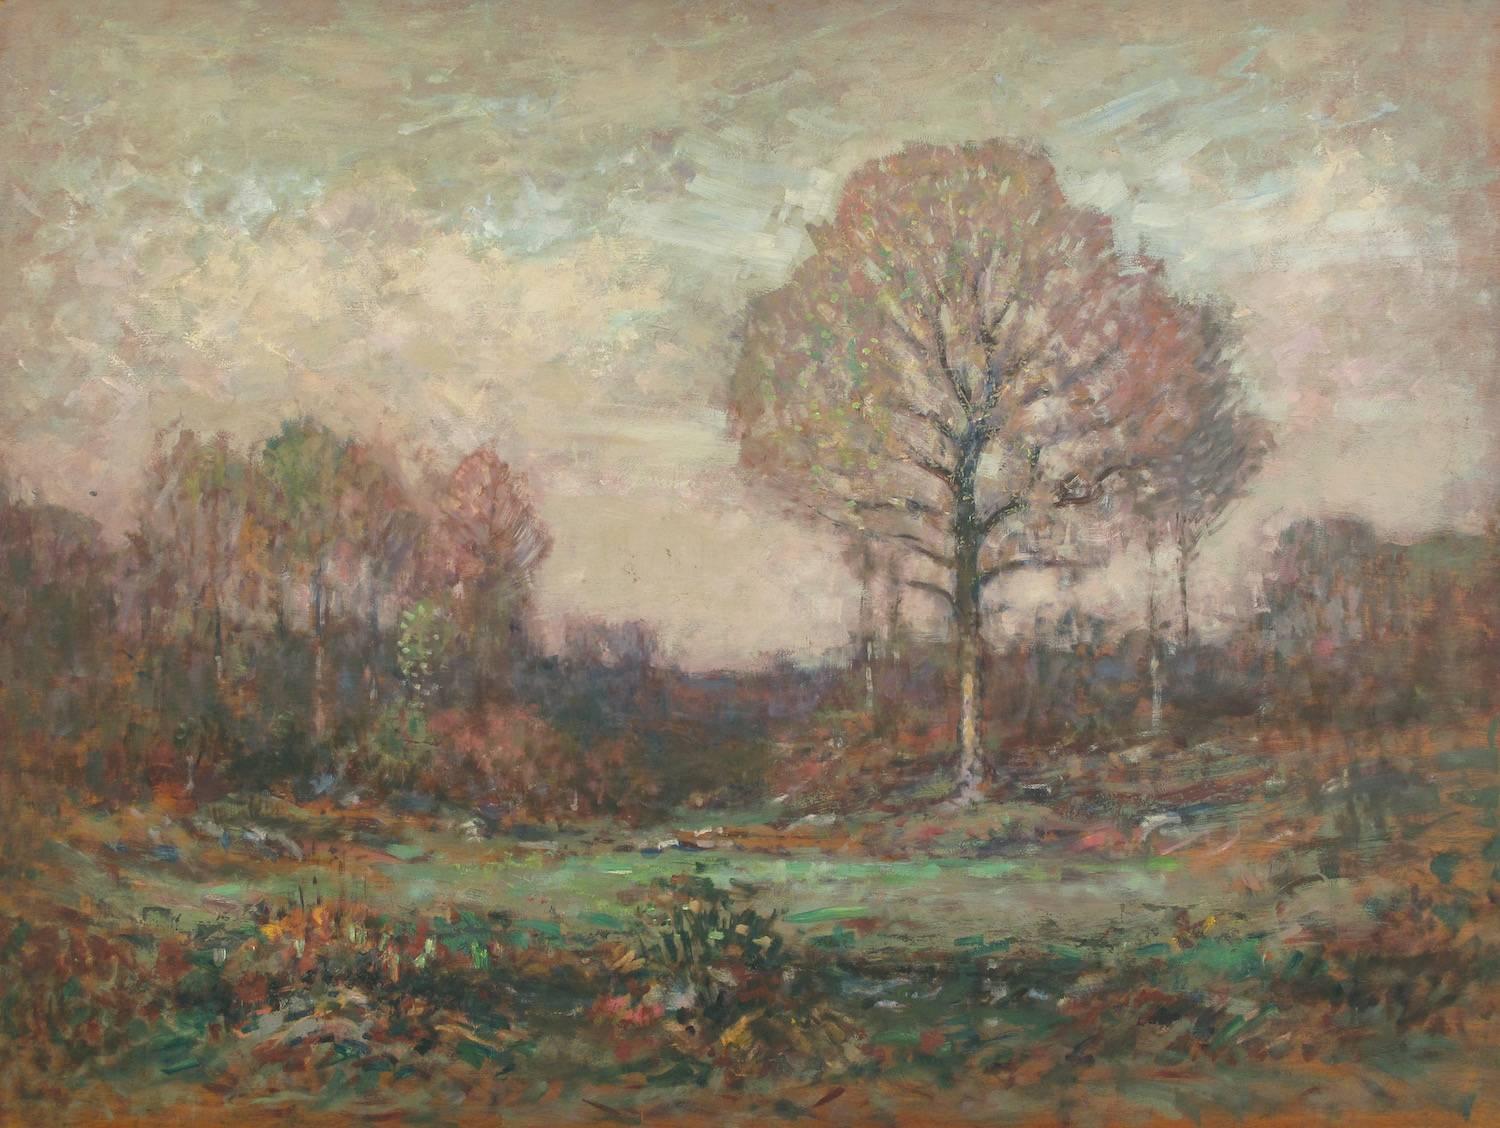 Landscape Painting Henry Cooke White - "Oak au printemps" 1930 peinture à l'huile impressionniste américaine, paysage de chênes.